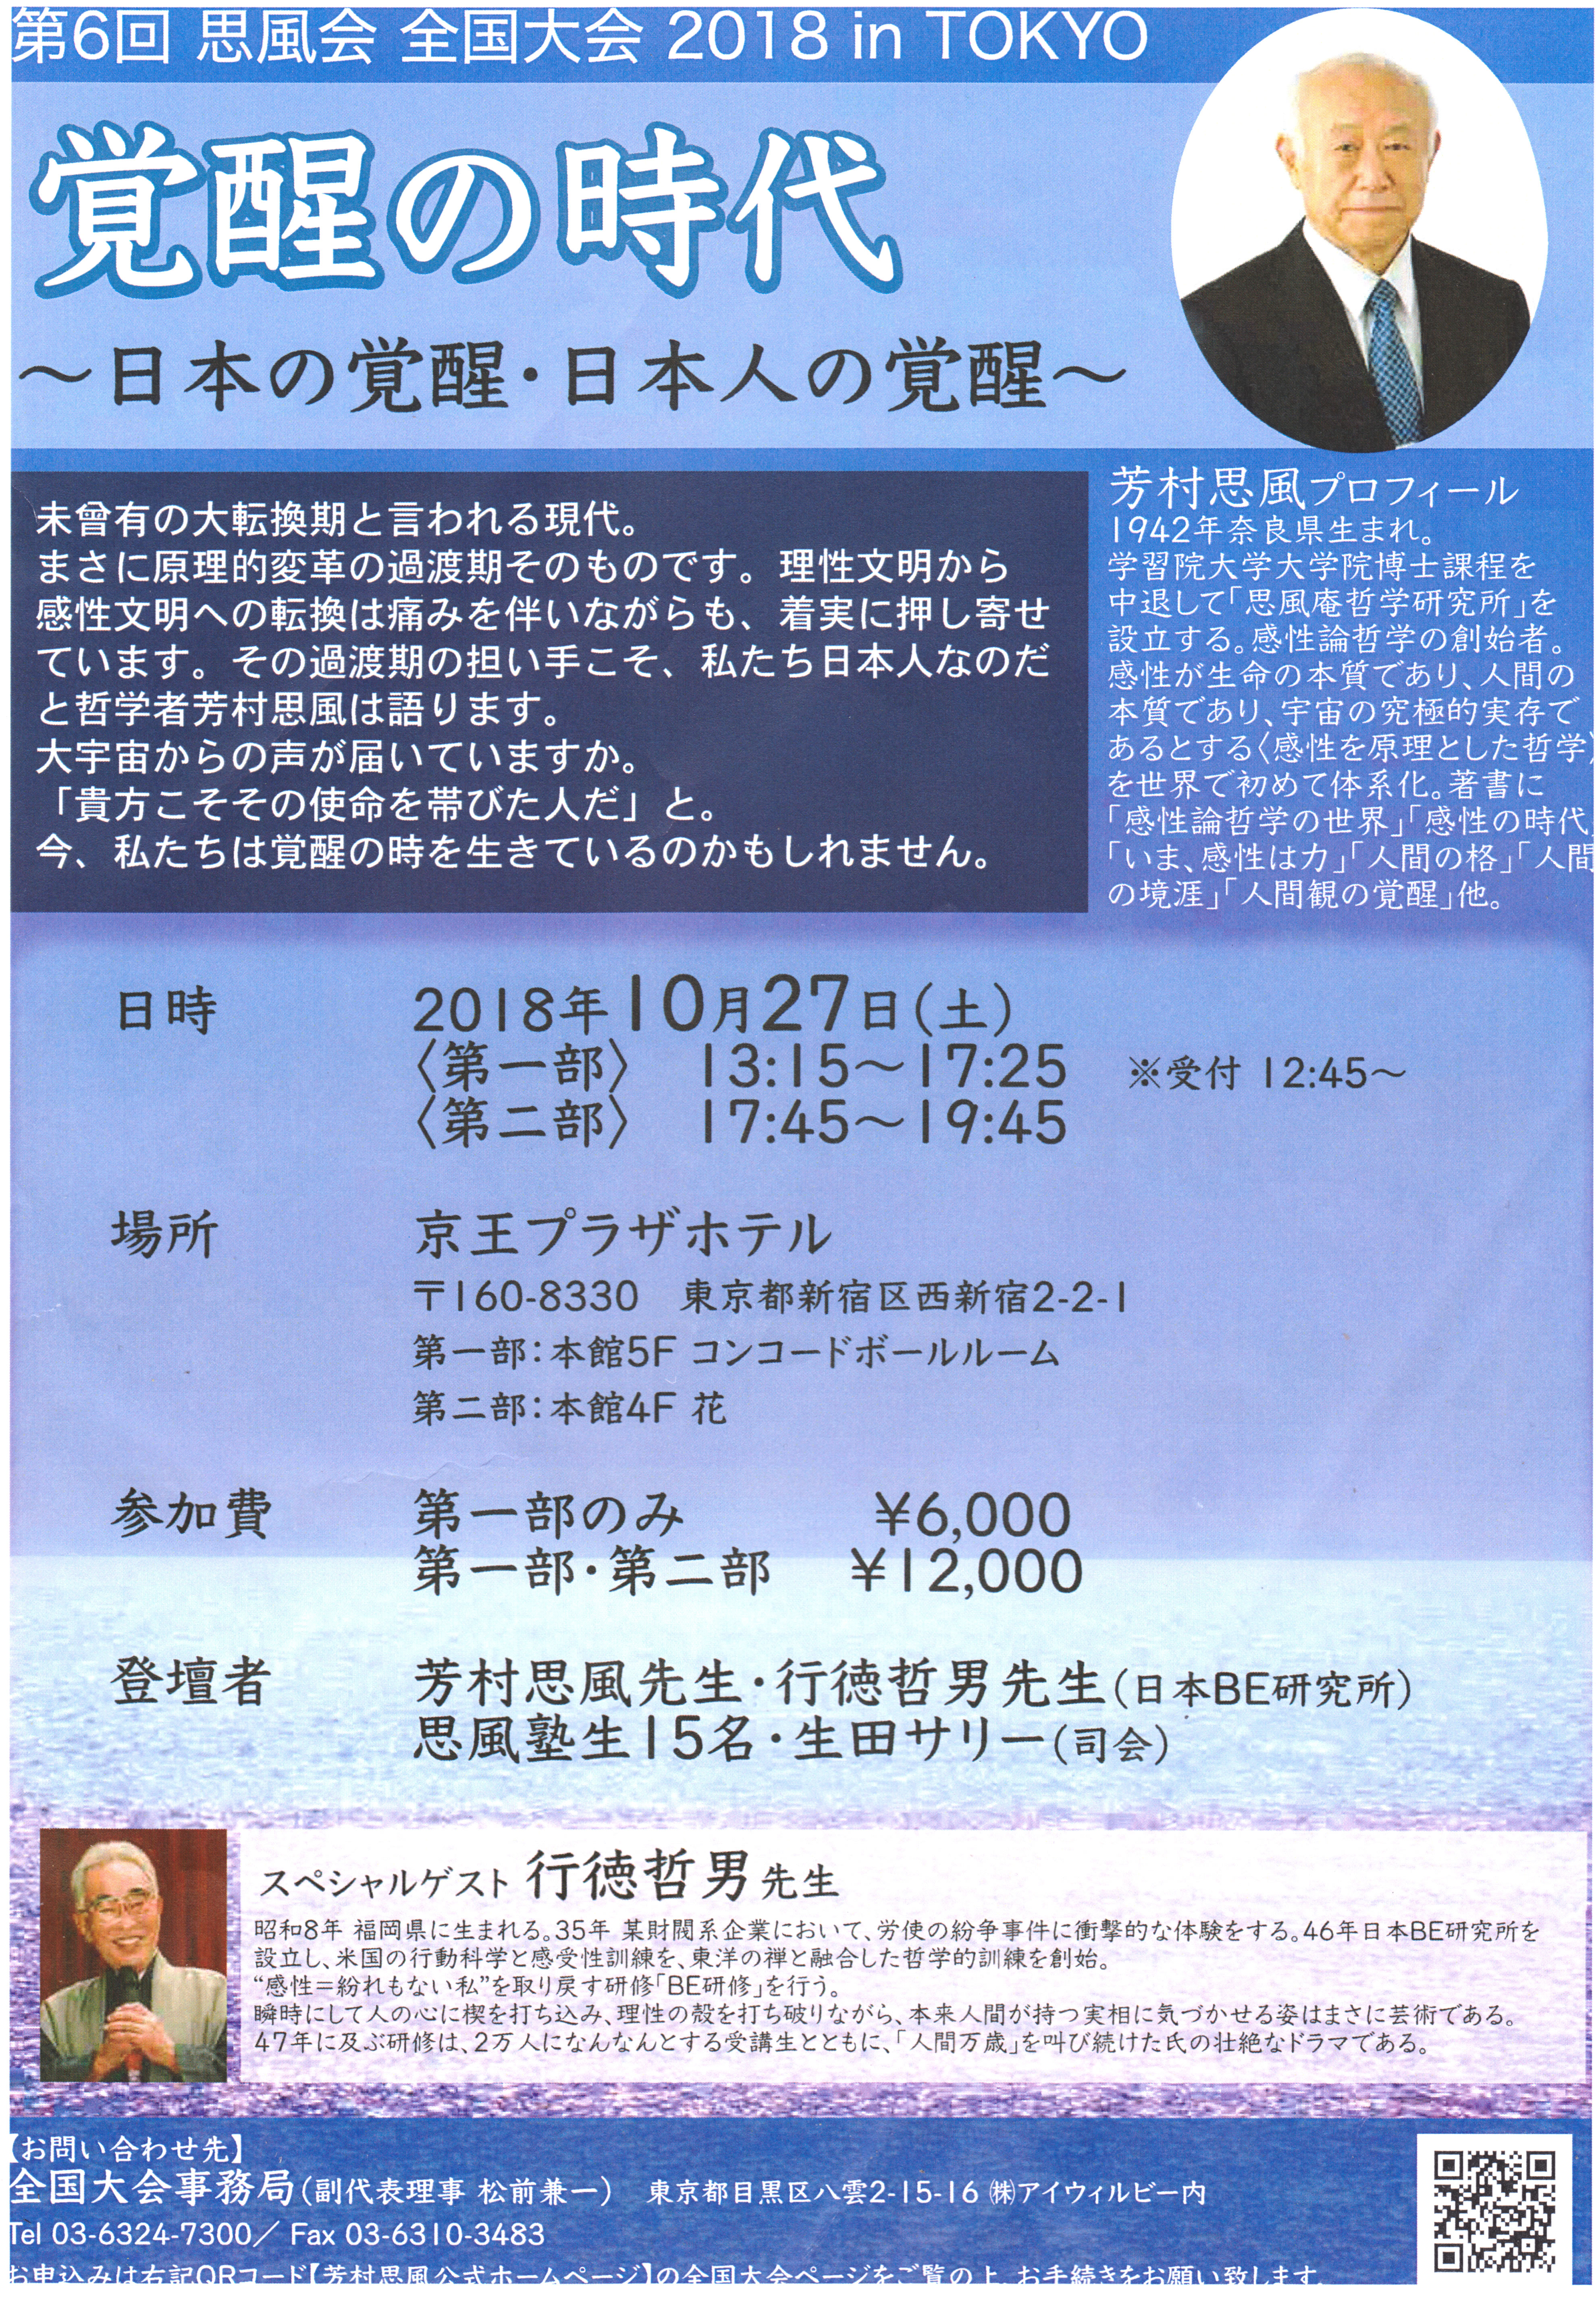 2018shifukai1ddd - 第6回思風会全国大会は2018年10月27日東京で開催します。